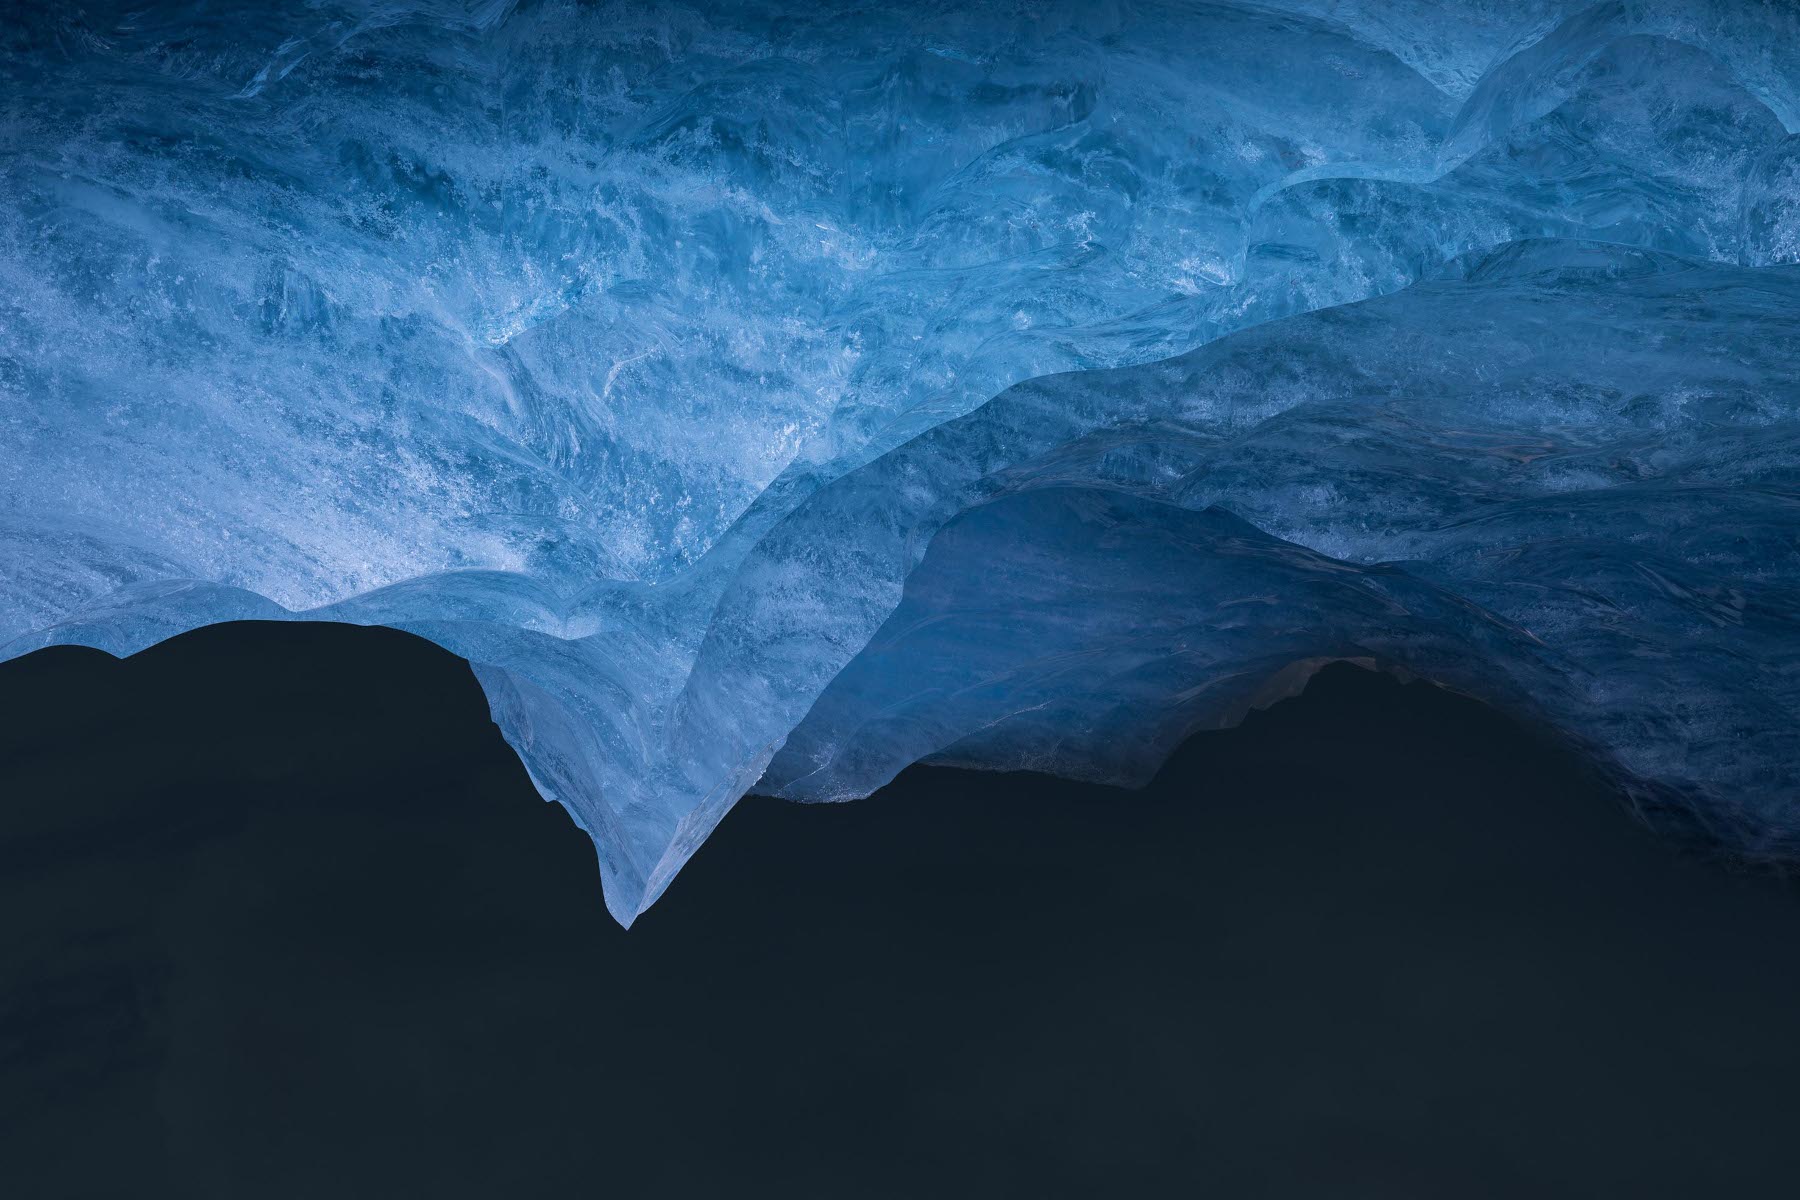 Paysage surréaliste et improbable fait de glace illuminée par on ne sait quelle lumière.